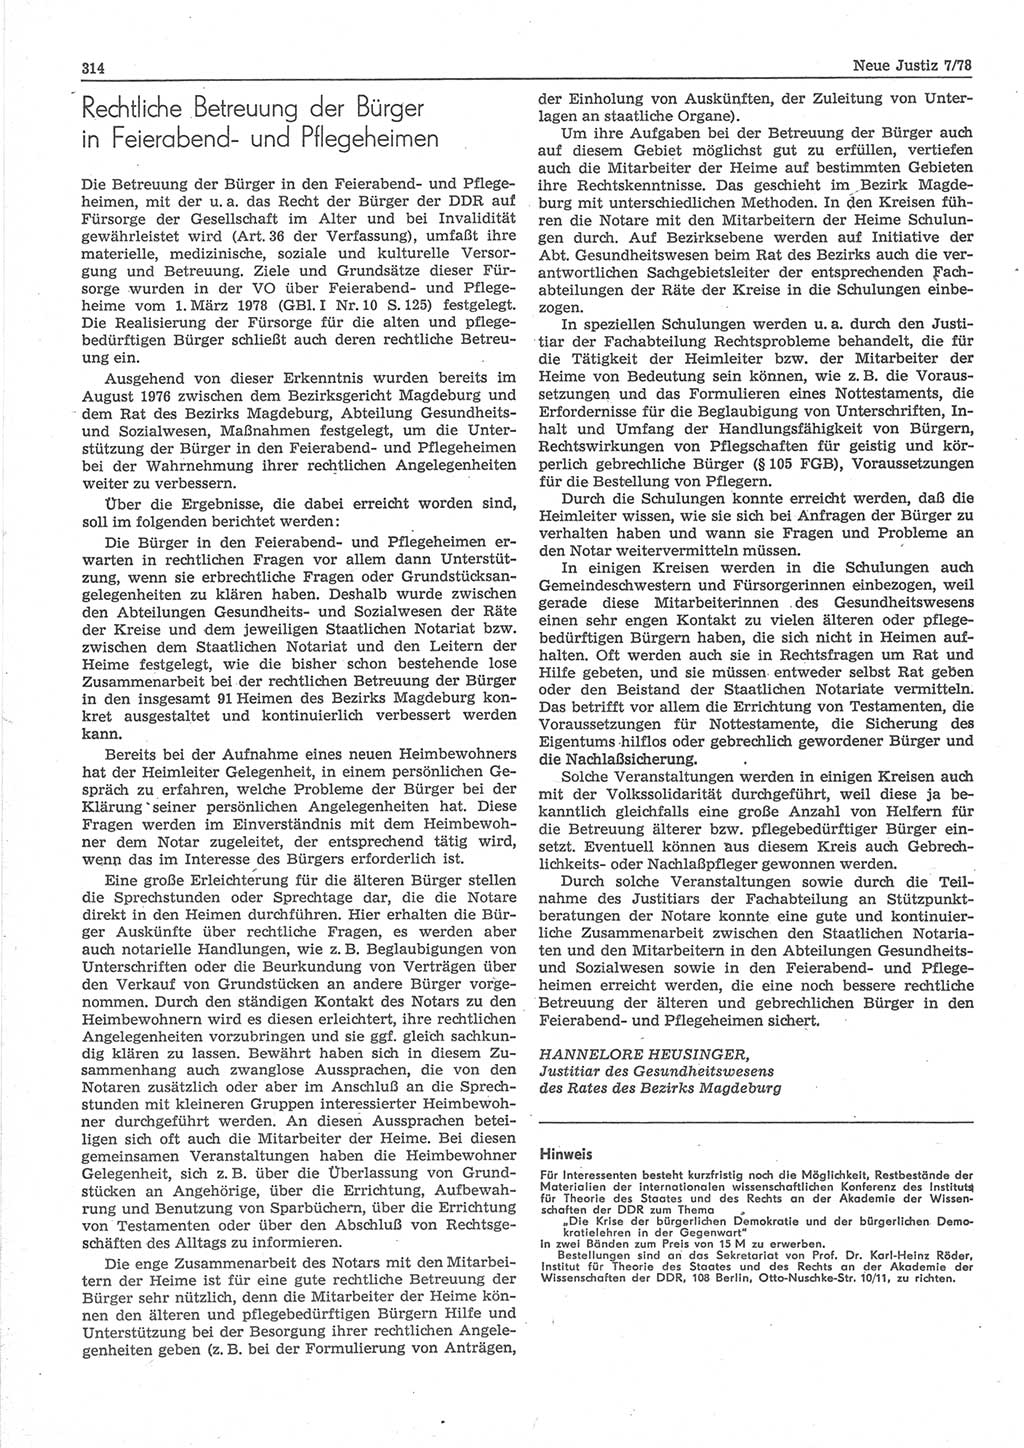 Neue Justiz (NJ), Zeitschrift für sozialistisches Recht und Gesetzlichkeit [Deutsche Demokratische Republik (DDR)], 32. Jahrgang 1978, Seite 314 (NJ DDR 1978, S. 314)